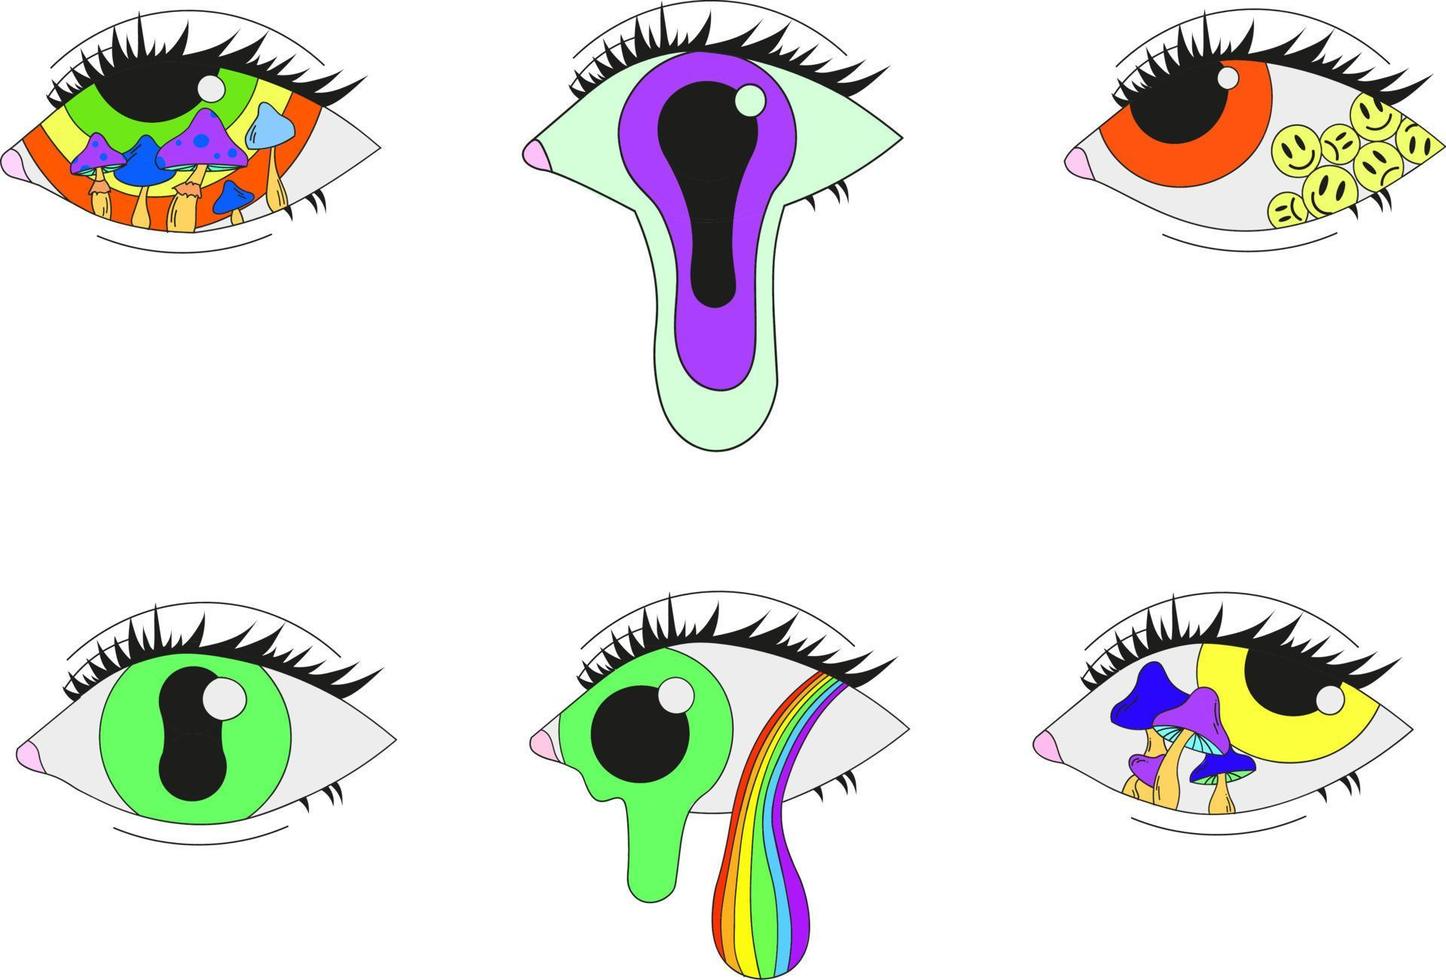 un conjunto de seis ojos psicodélicos. ilustración vectorial aislada en un fondo blanco. vector